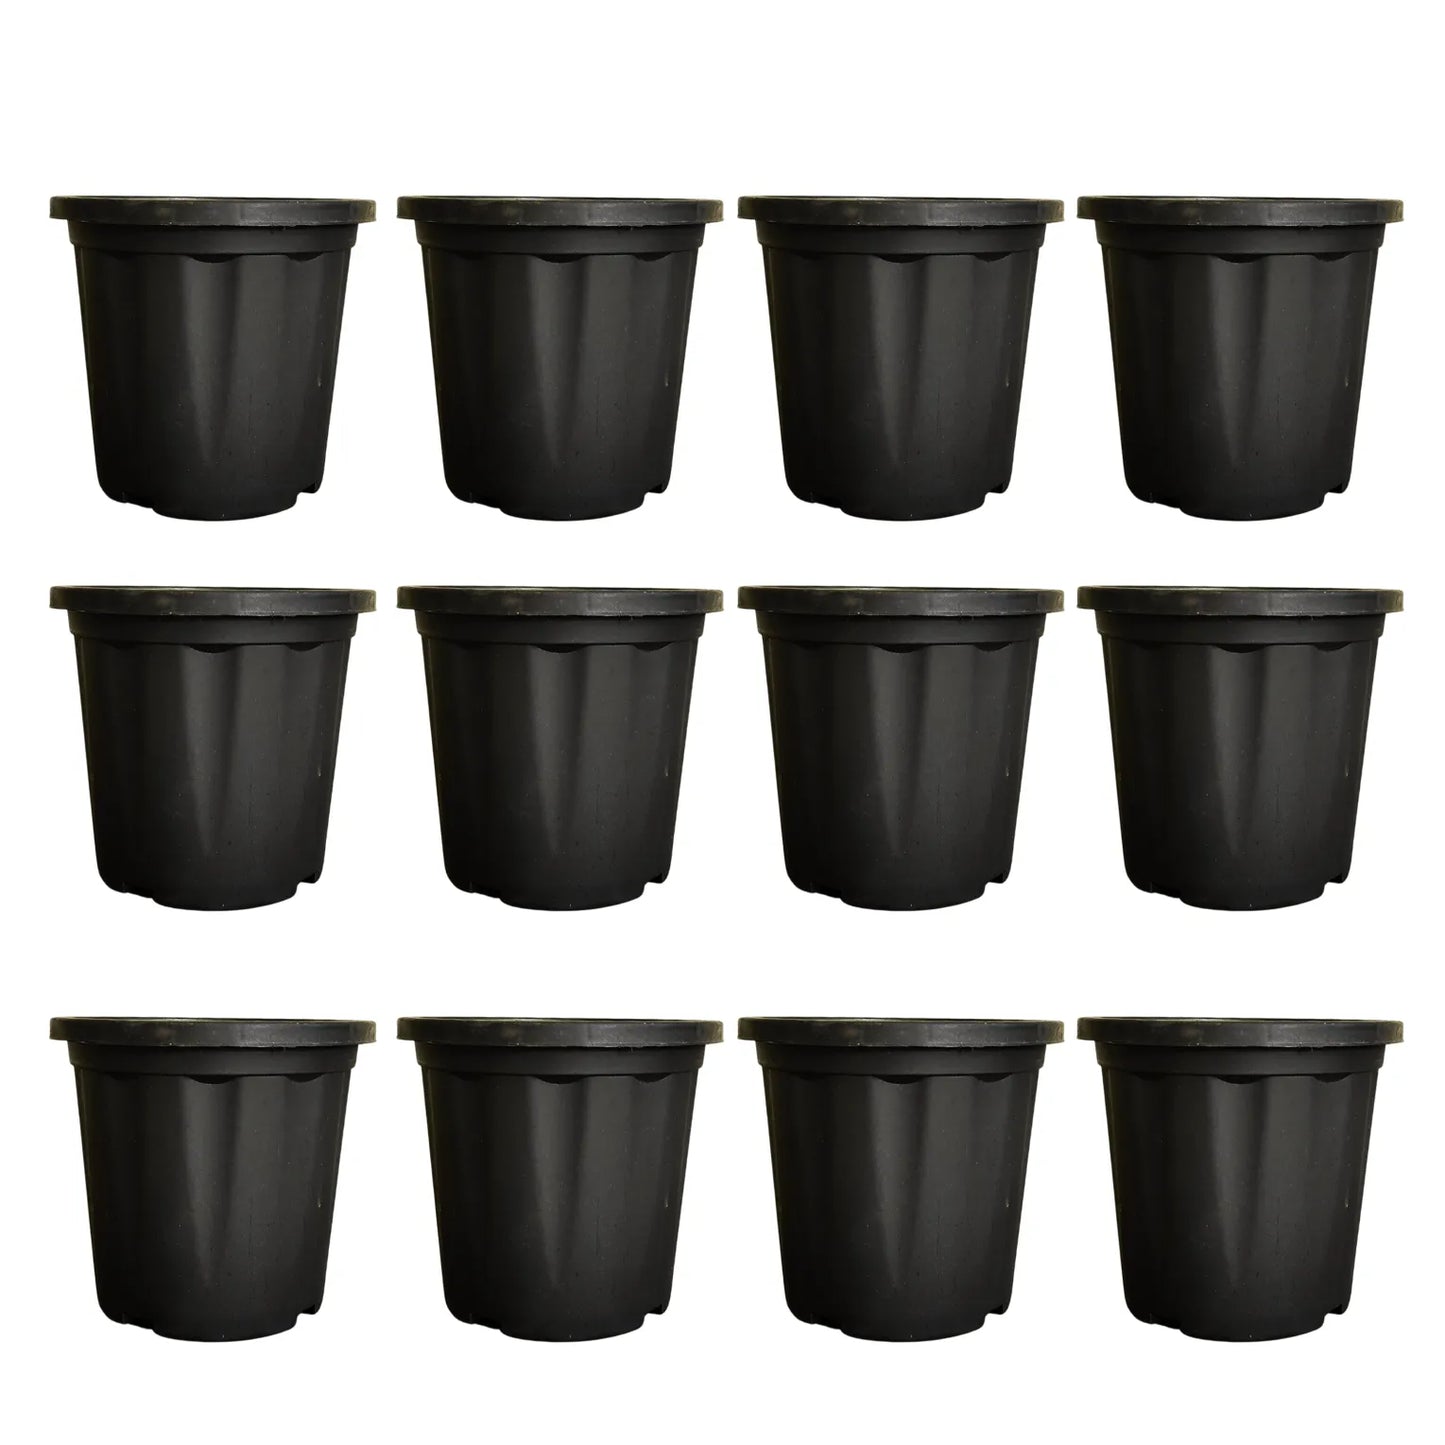 Gardening Plastic Pots - Black